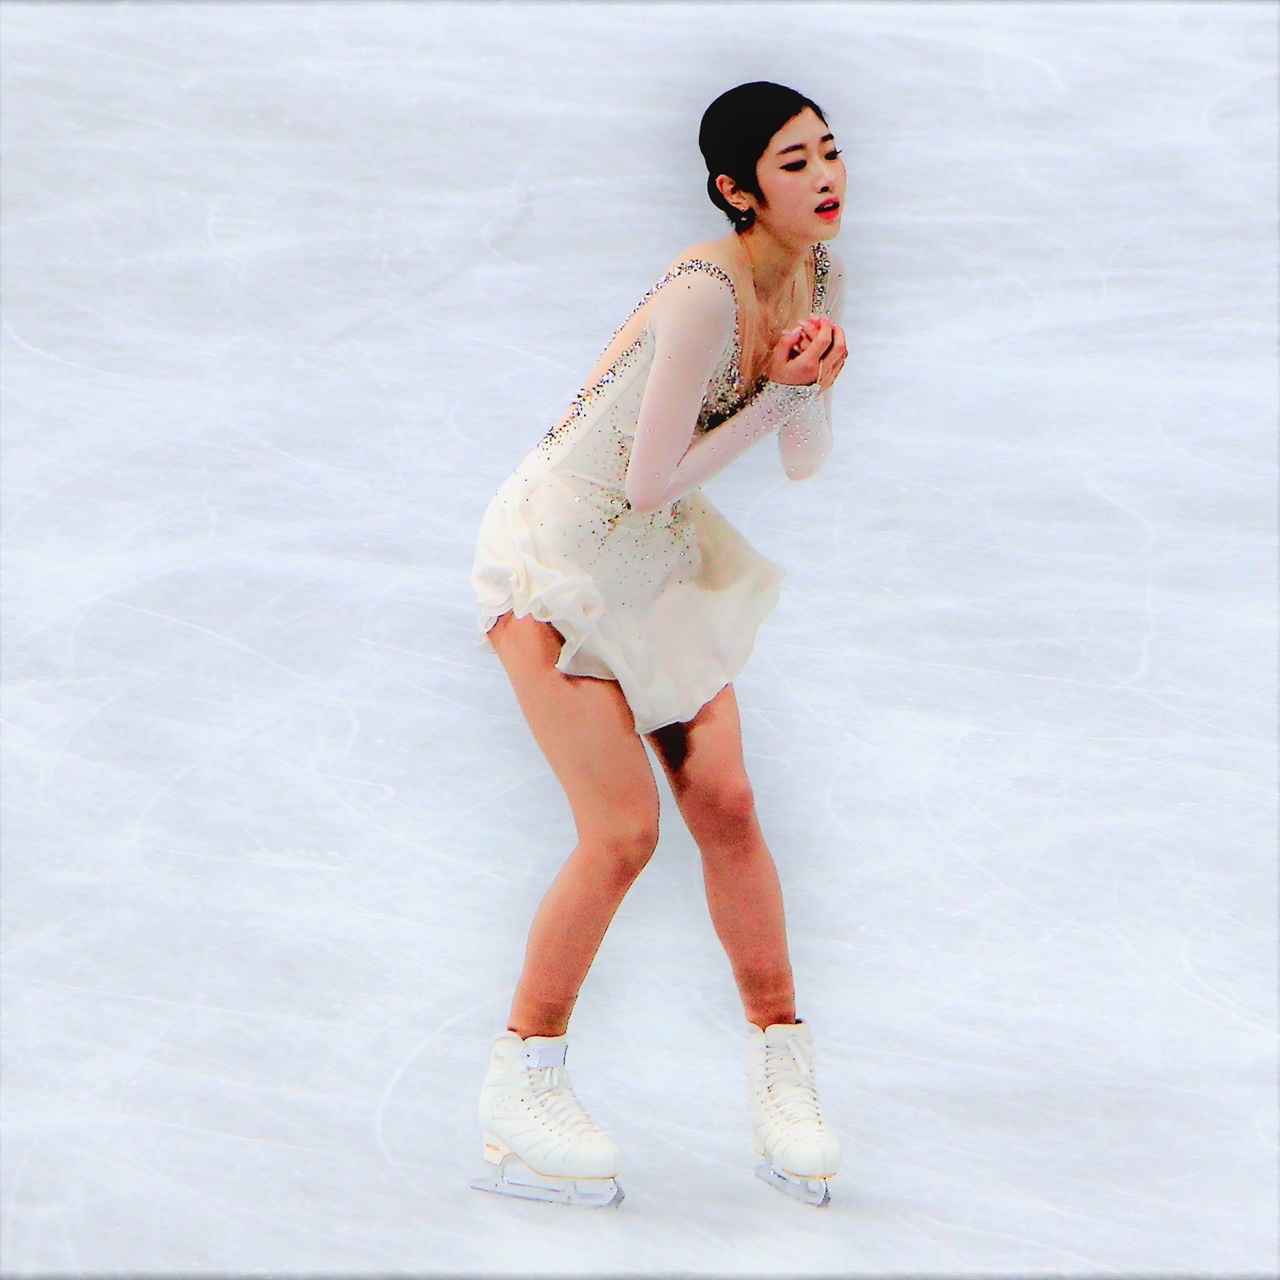  24일 사이타마 슈퍼 아레나에서 열린 2023 피겨 스케이팅 세계선수권대회 여자 싱글 프리 프로그램에서 이해인 선수가 연기를 펼치고 있다.